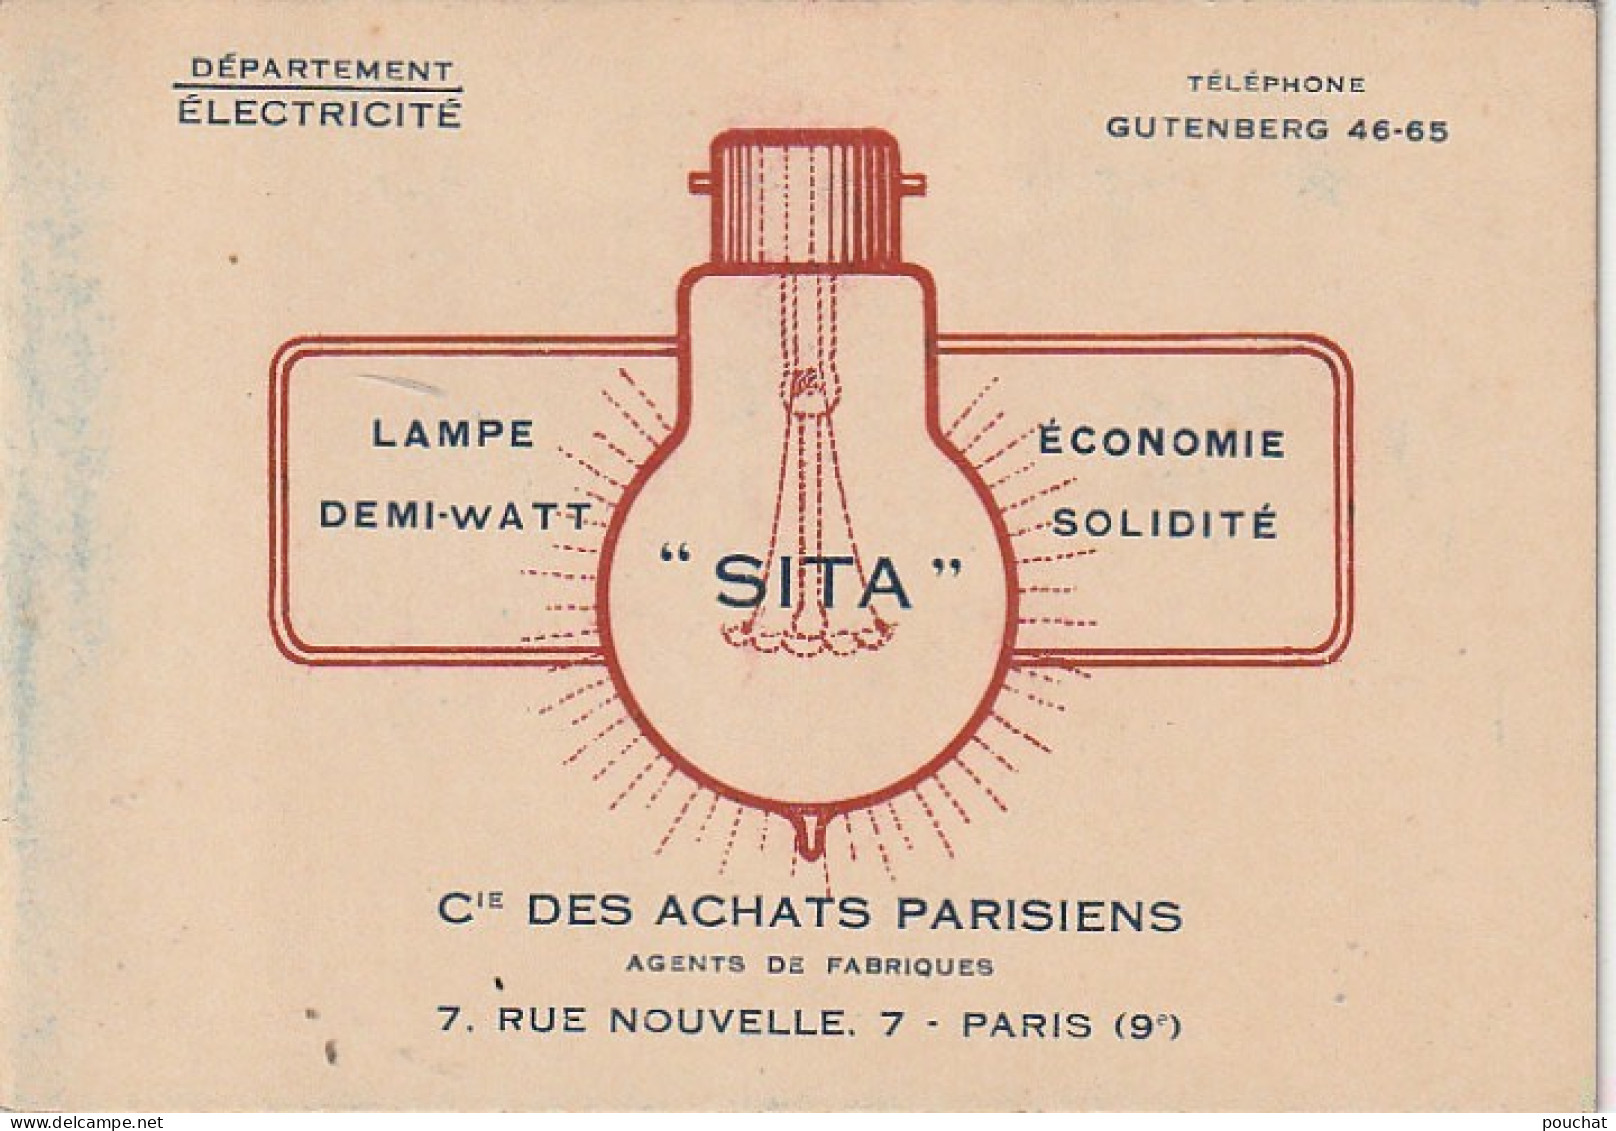 Z+ 25- (75) Cie DES ACHATS PARISIENS , DEPT ELECTRICITE , PARIS 9e - LAMPES FILAMENTS METALLIQUES - TARIFS - Elektrizität & Gas